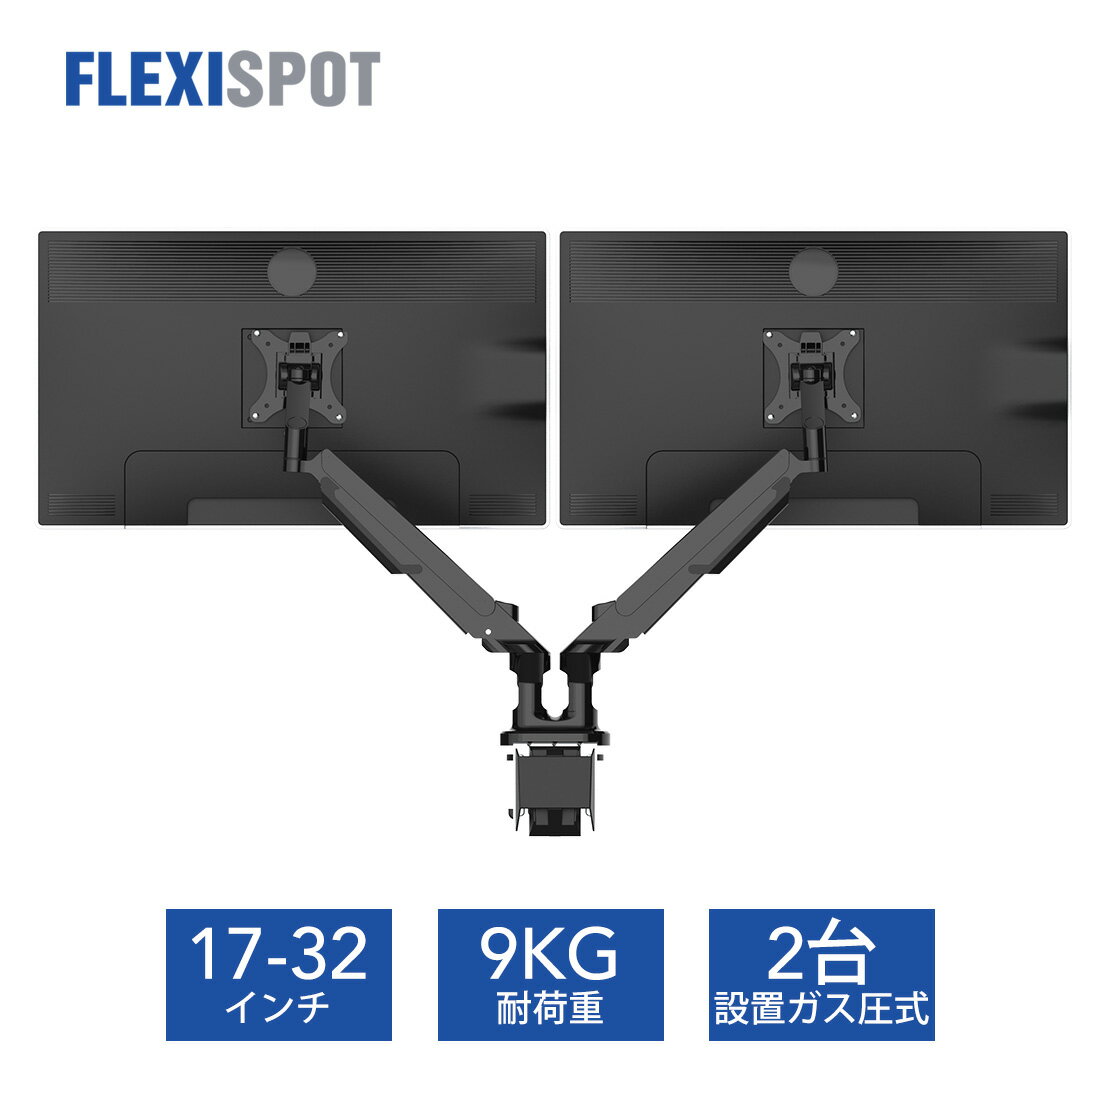 Flexispot モニターアーム デュアルモニターアーム ディスプレイアーム 2画面 大型モニター向け ガス圧式 液晶モニターアーム ガススプリング式 360°回転17-32インチ 2-9kg対応 狭い天板向け F8LD